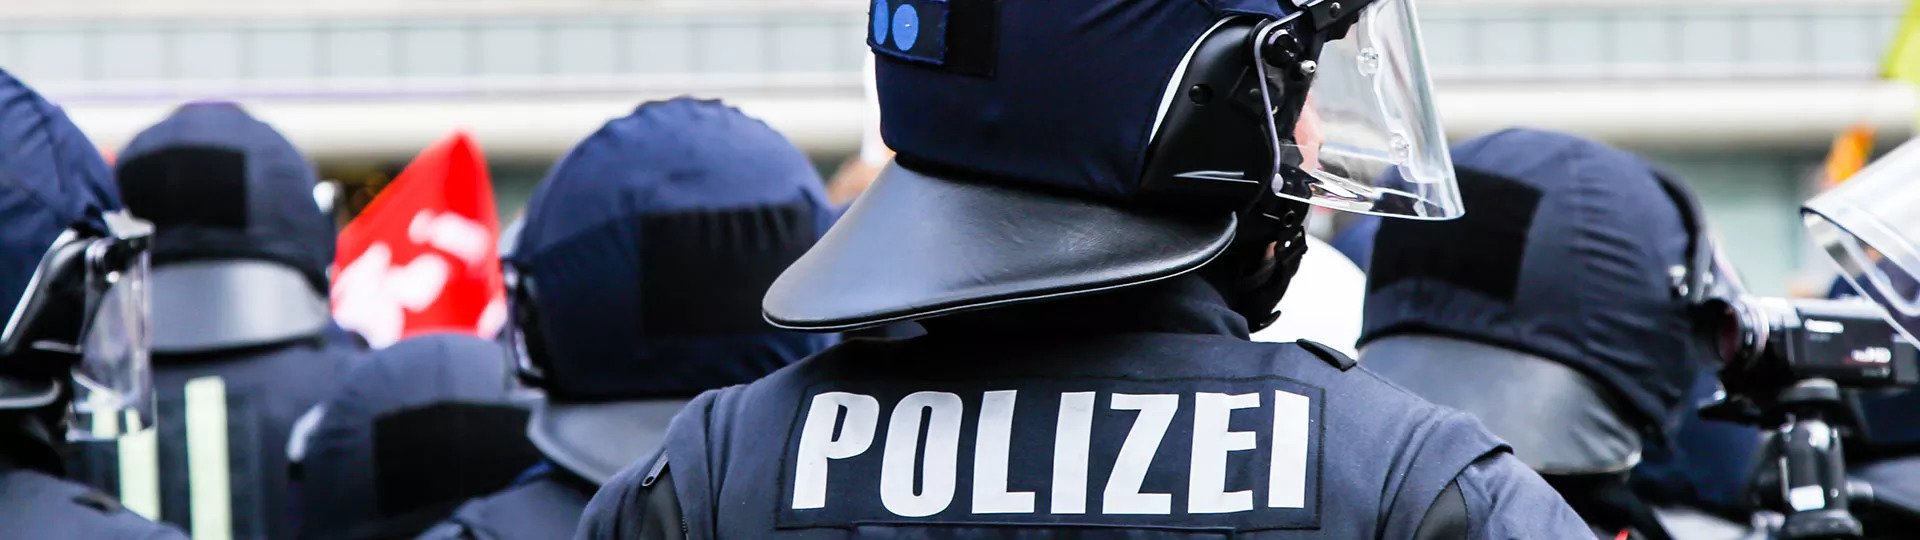 Dienstanfänger-Police der Polizei | DBV Magdeburg Fink & Wagner GmbH